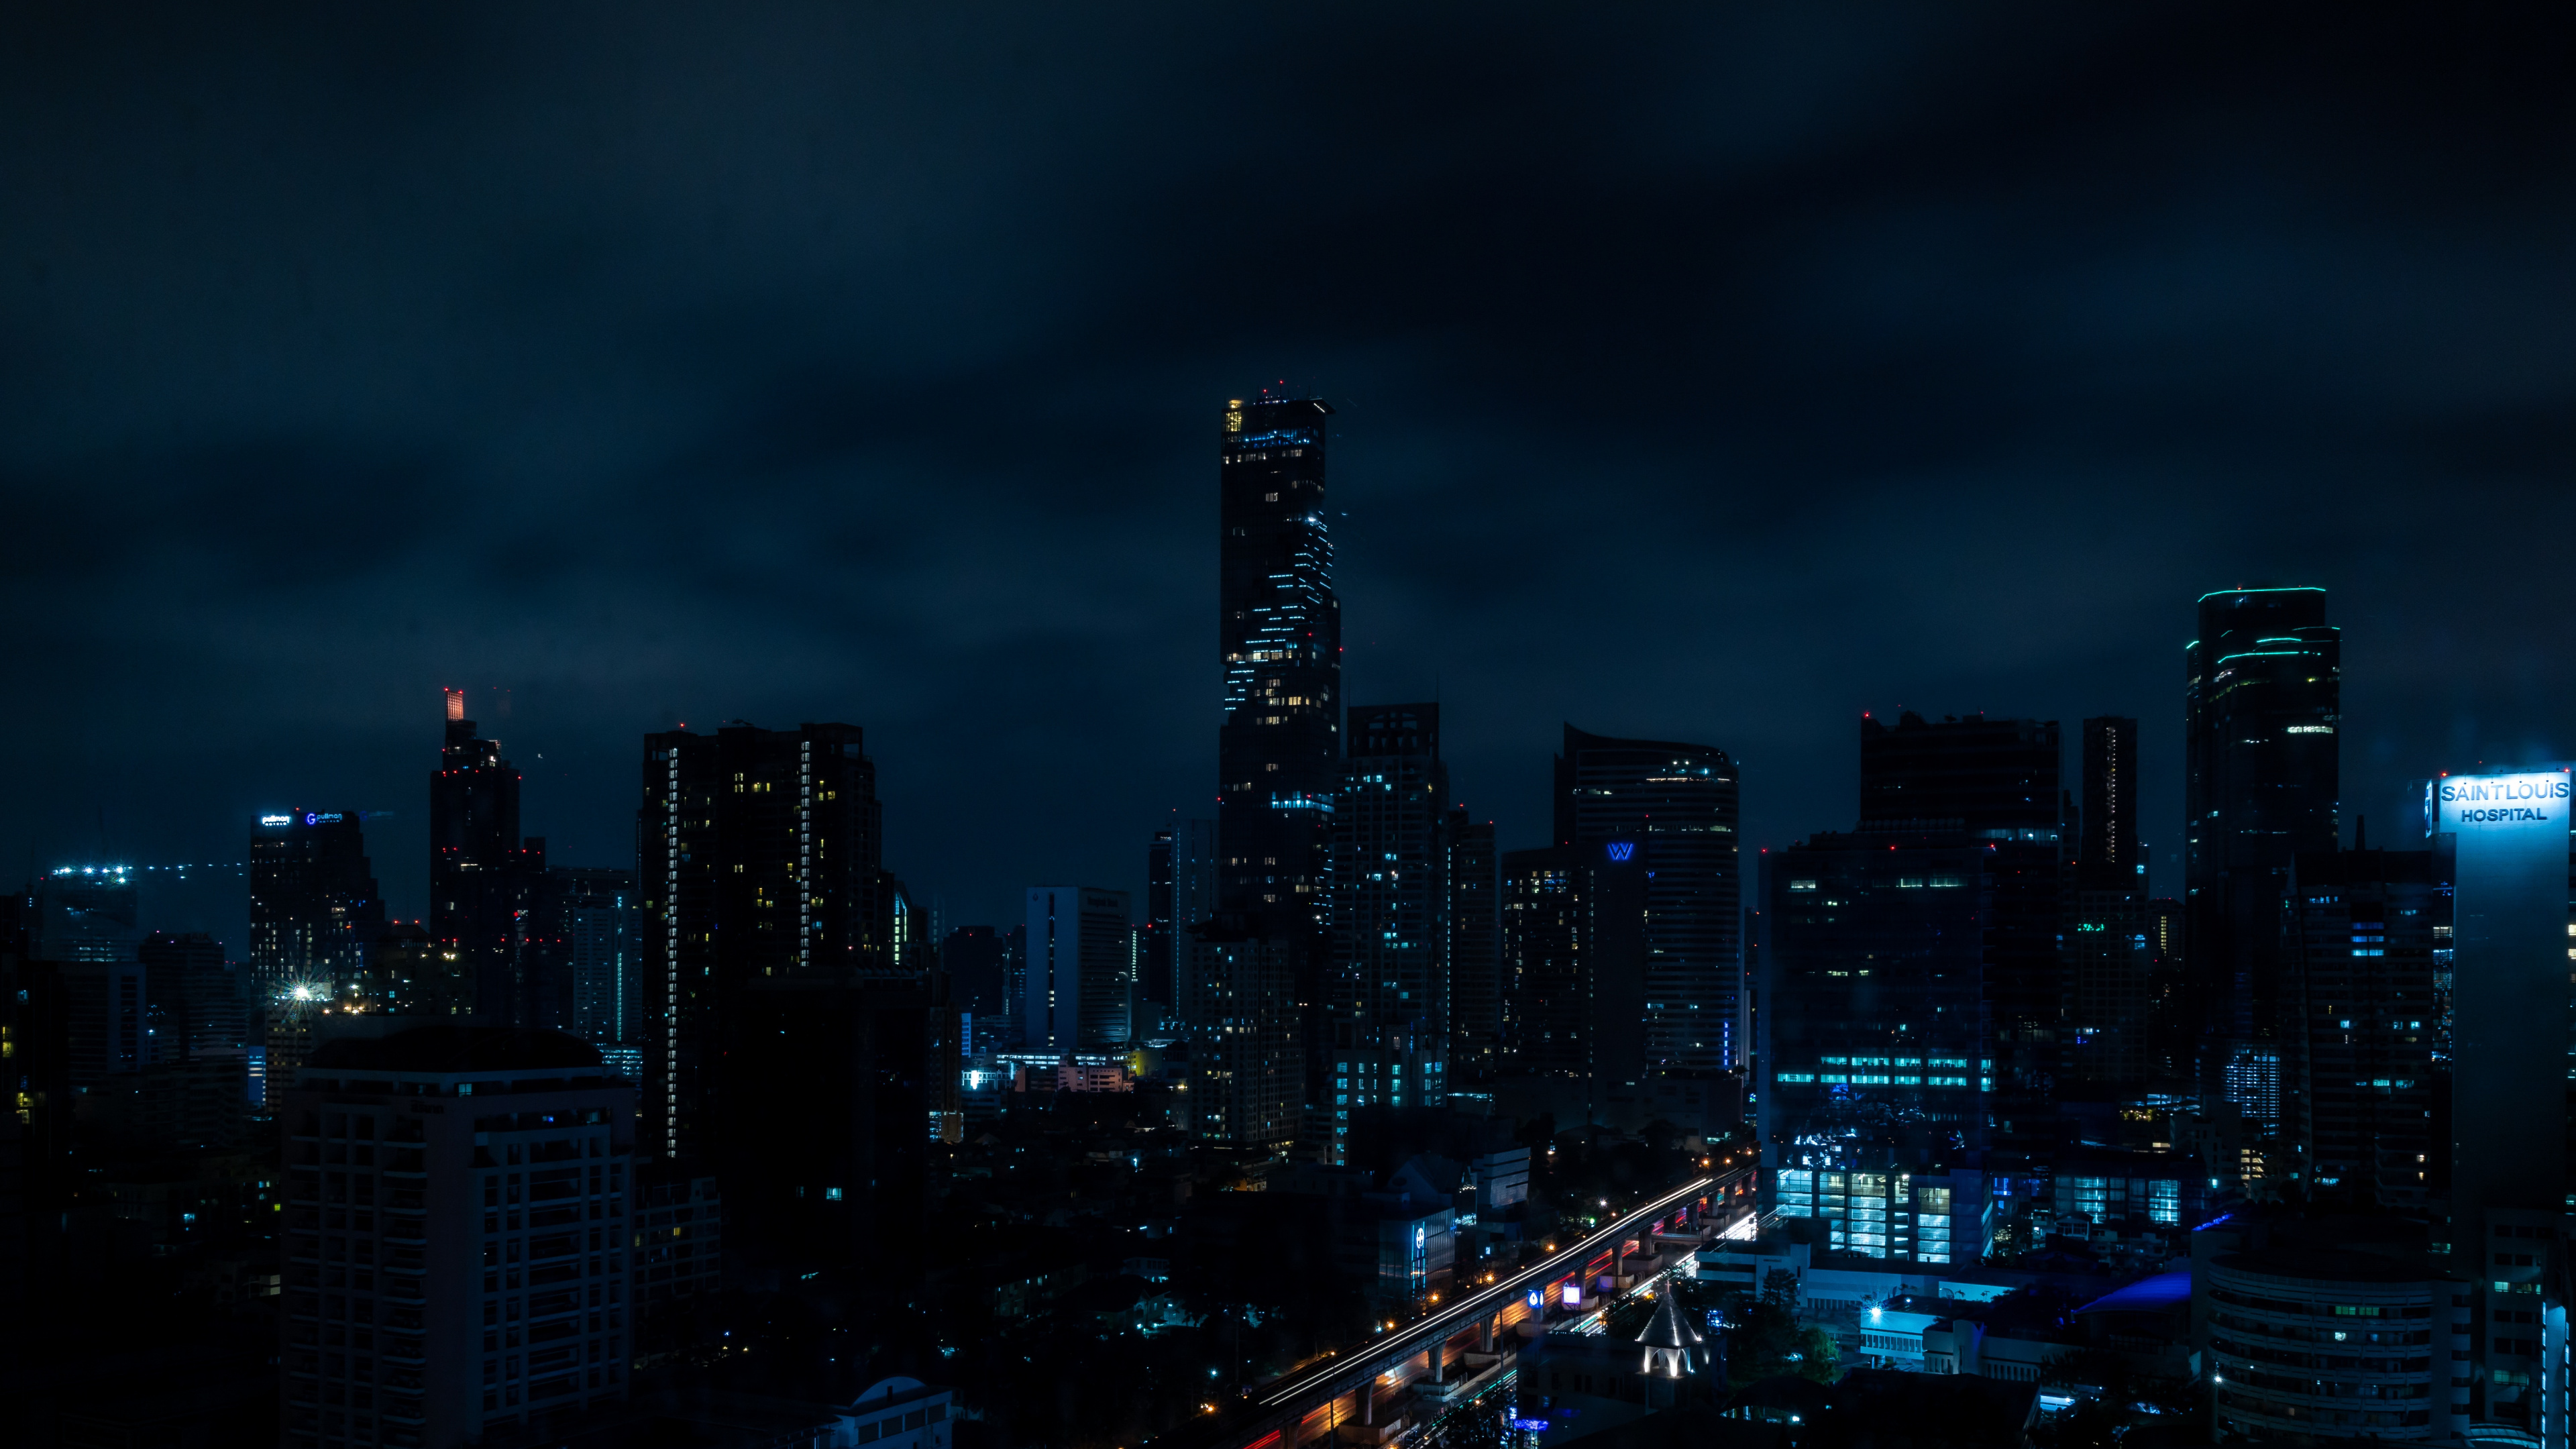 Skyline Der Stadt Bei Nacht Night. Wallpaper in 3840x2160 Resolution